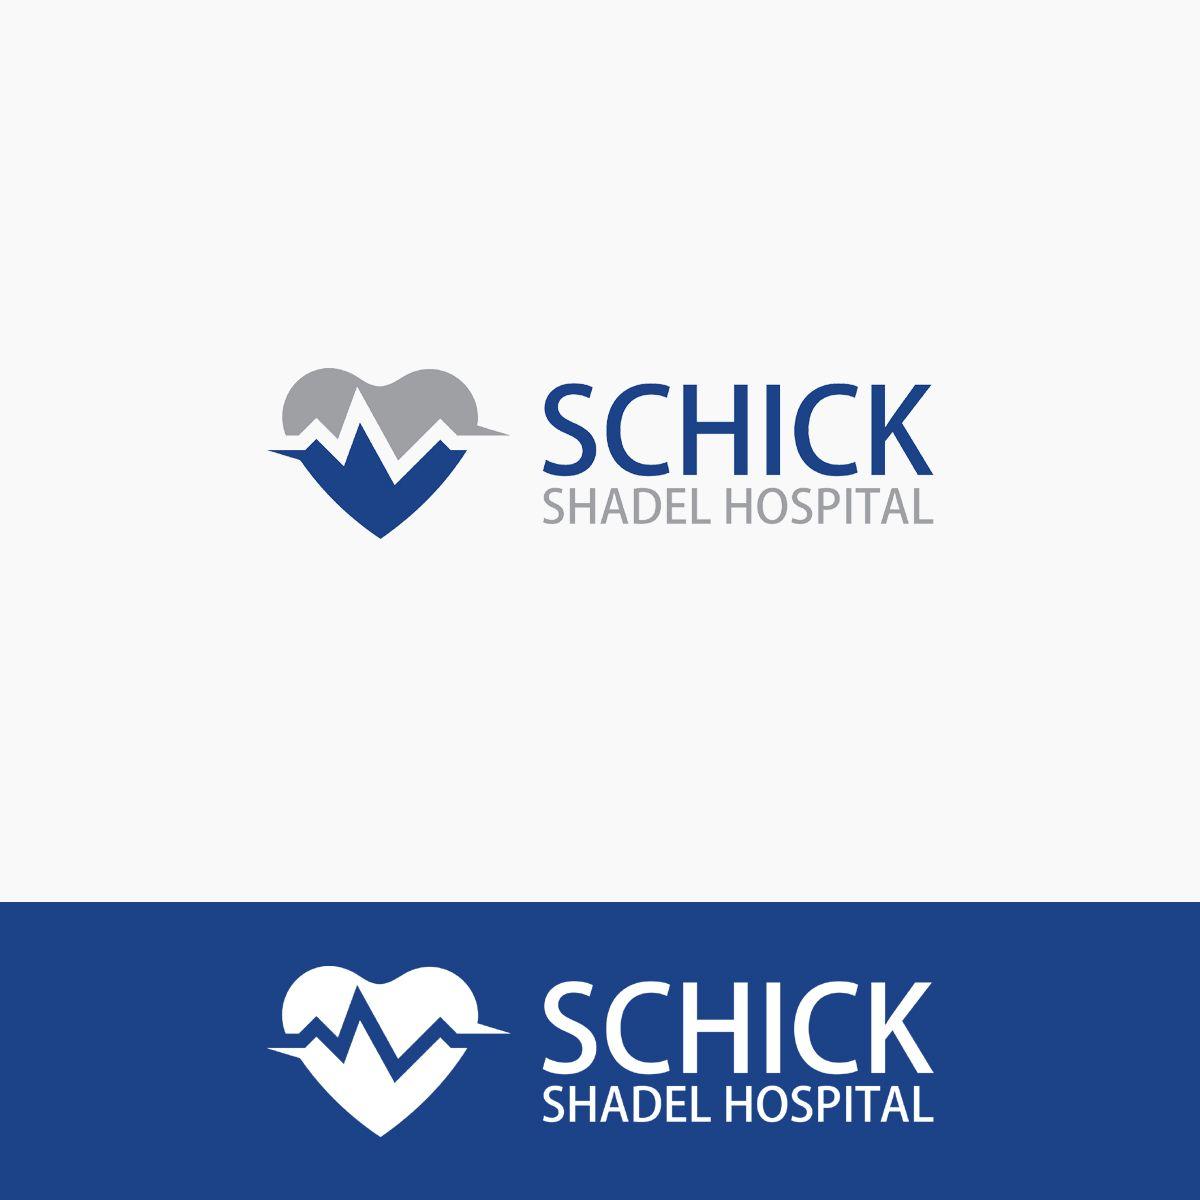 Schick Logo - Modern, Serious, Hospital Logo Design for Schick Shadel Hospital